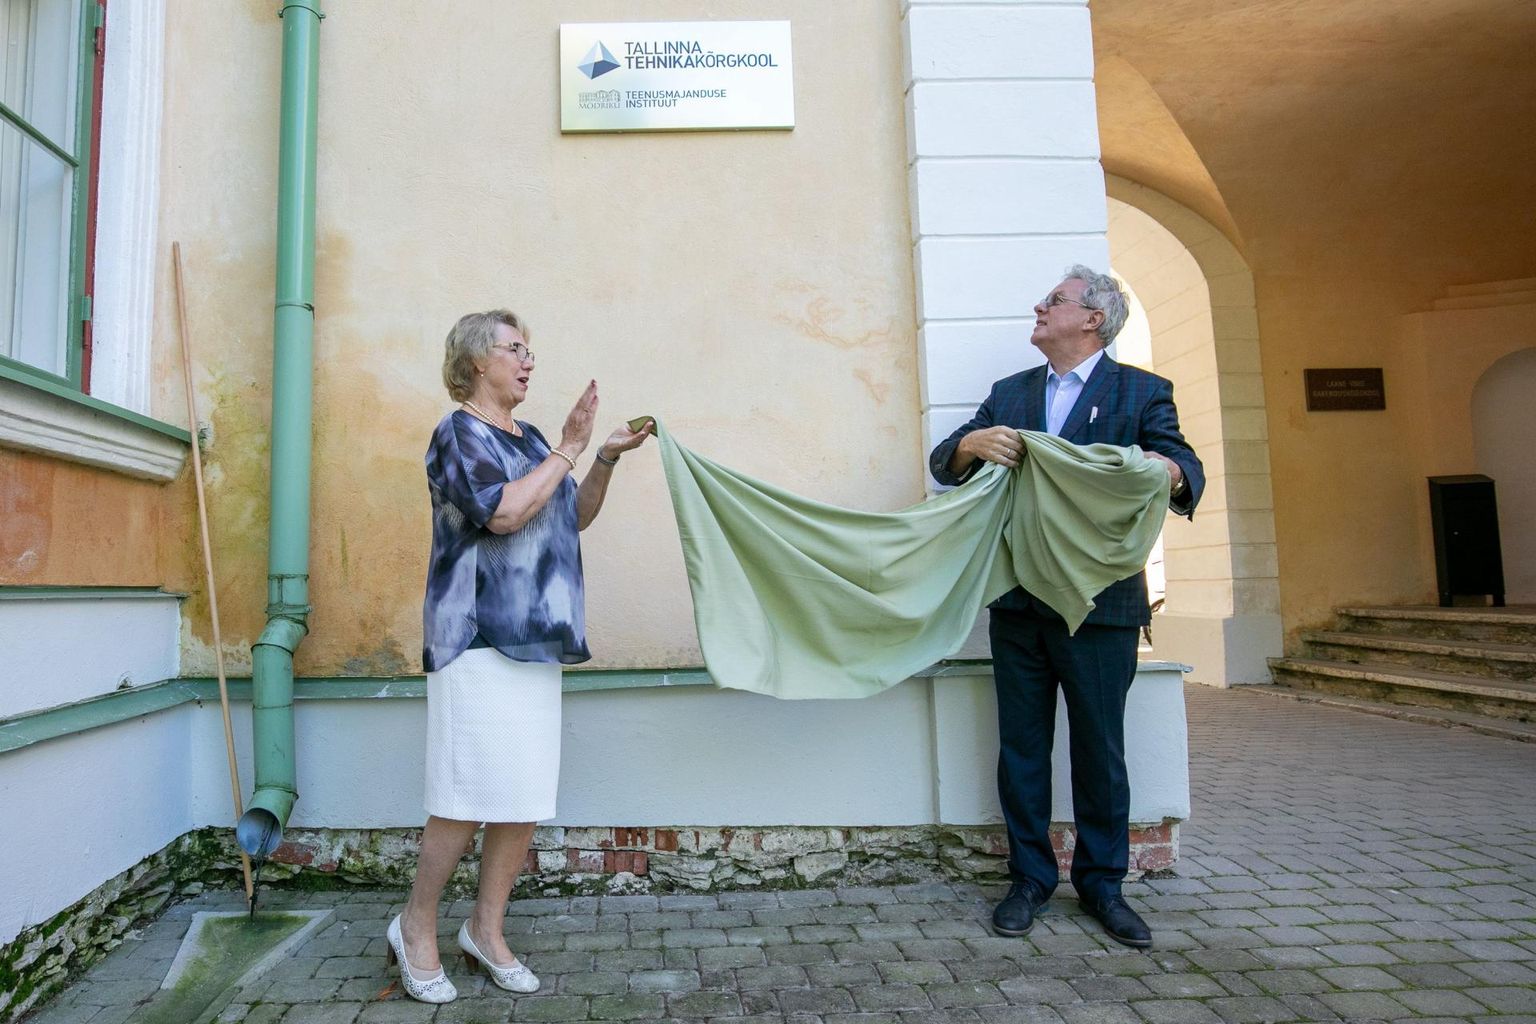 Mõdrikul avasid Tallinna tehnikakõrgkooli teenusmajanduse instituudi sildi koolijuht Helle Noorväli ja Tallinna tehnikakõrgkooli rektor Enno Lend.